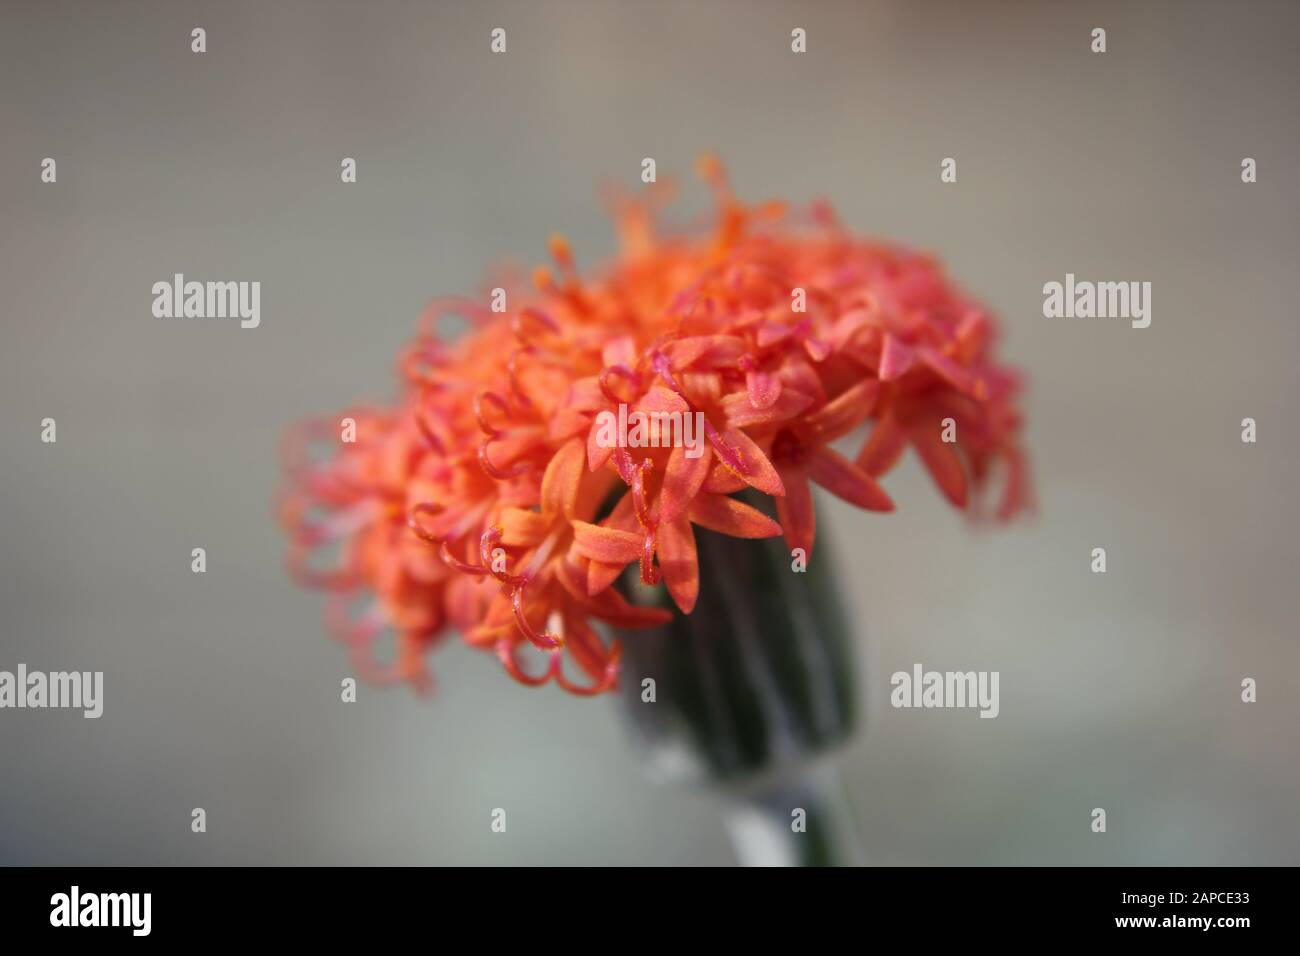 Orange button plant, Kleinia fulgens, coral senecio Stock Photo